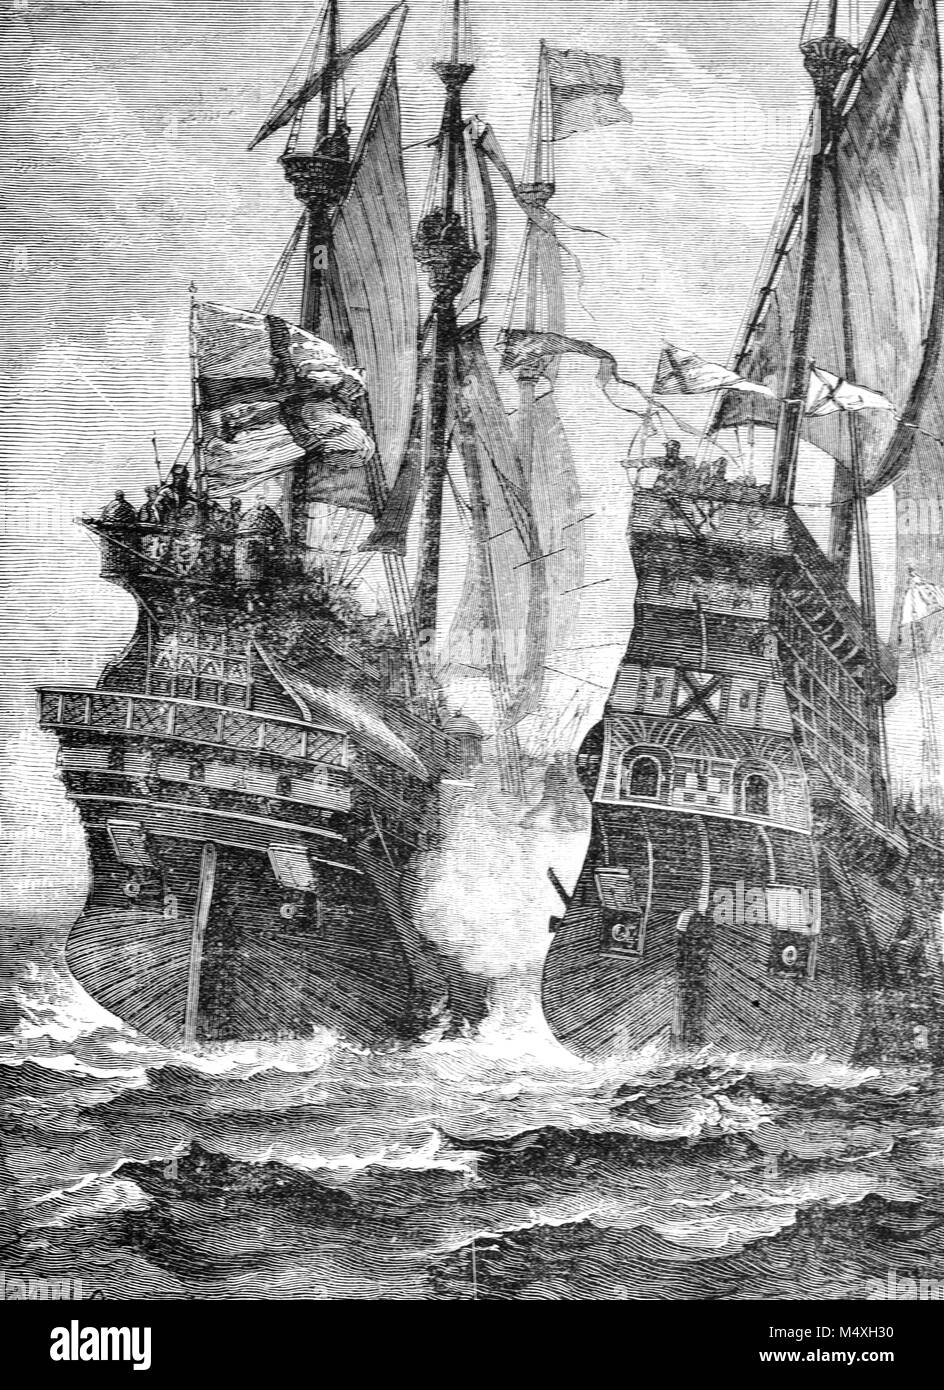 Mer Dernière bataille d'Andrew Barton (c1466-1511), un marin écossais et l'amiral, dont les navires 'Le Lion' et 'Jenny' Pirwyn ont été capturés par les Anglais sous le commandement de Sir Edward Howard en 1511. Andrew Barton morts pendant la bataille, ou de ses blessures. (Gravure, 1888) Banque D'Images